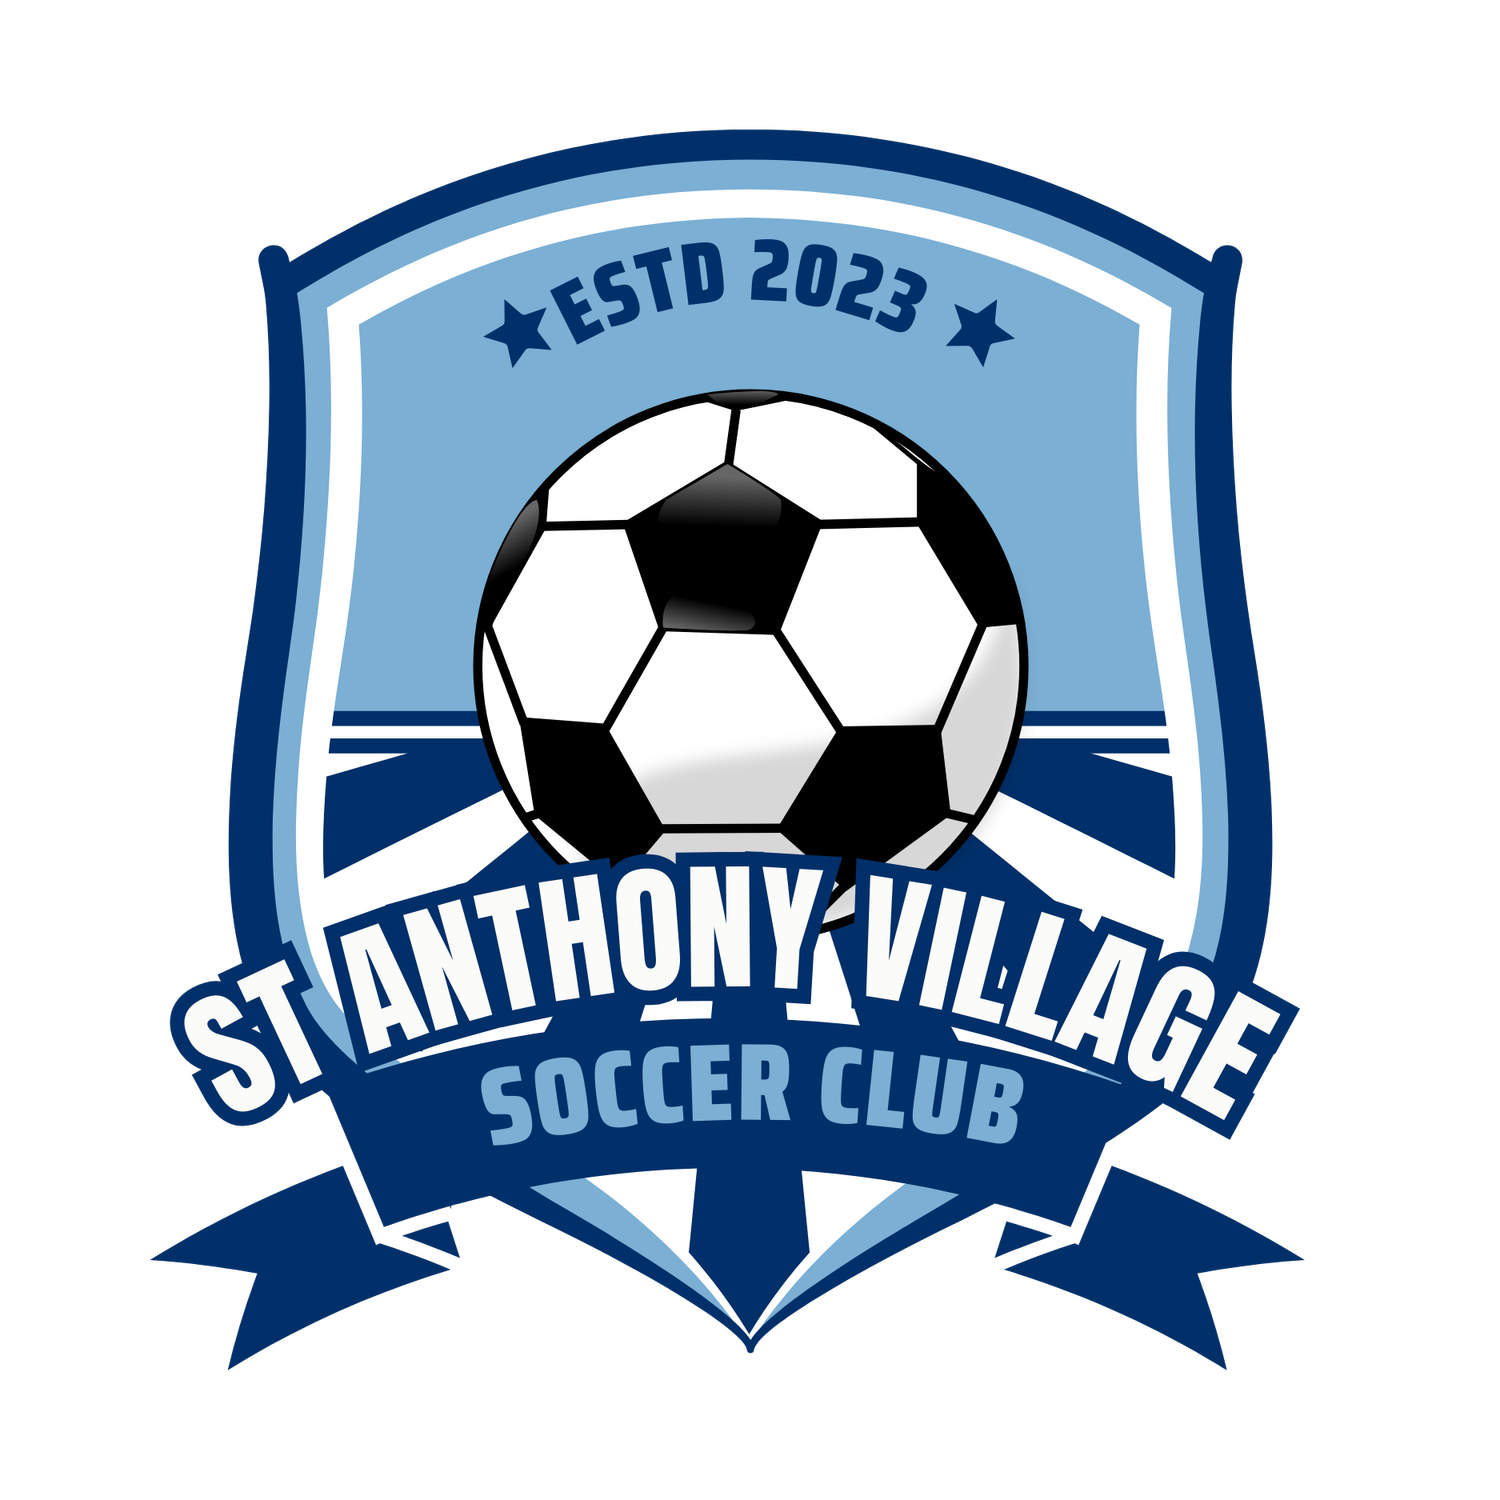 St Anthony Village Soccer Club